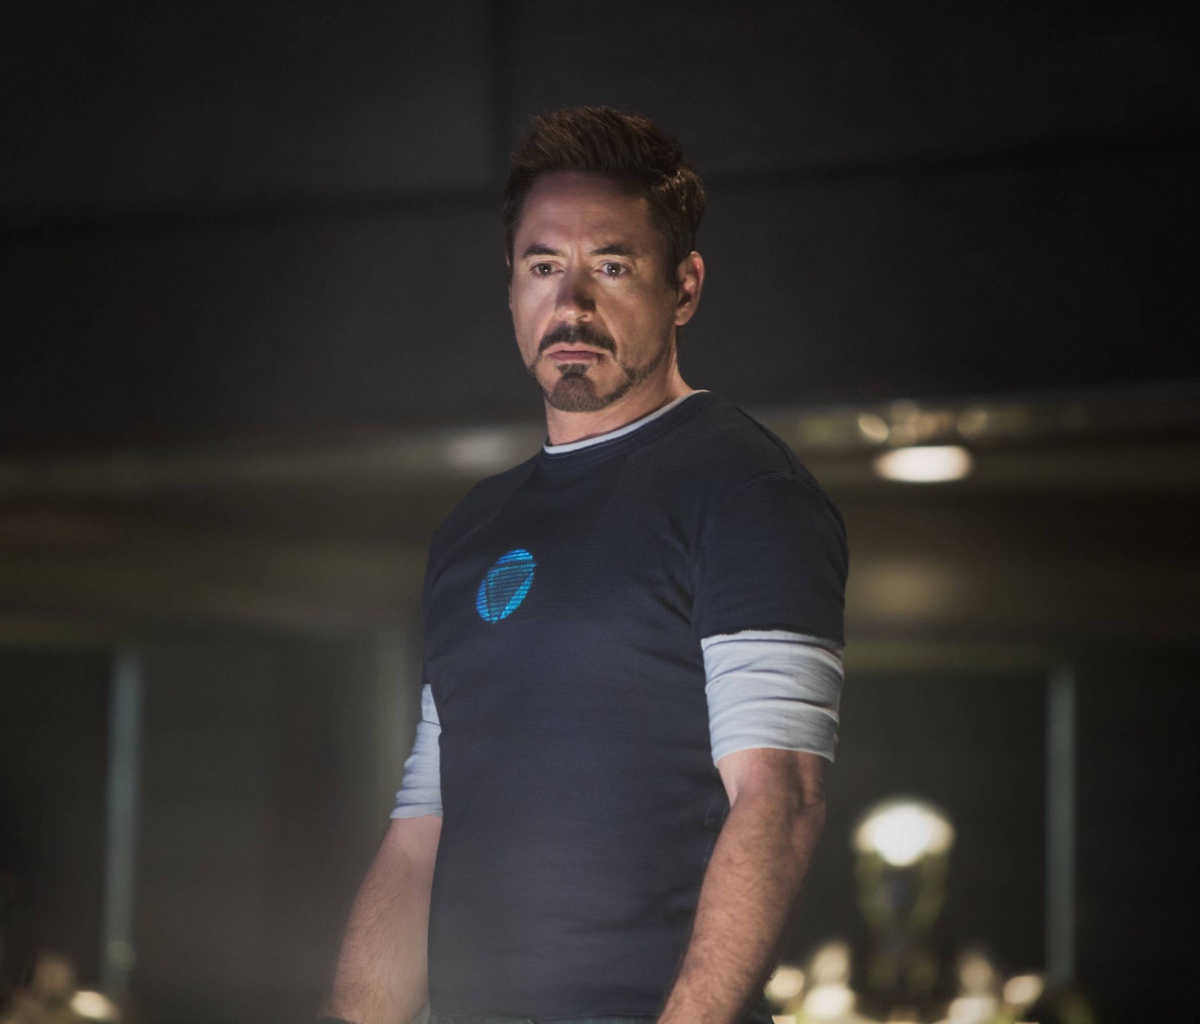 Обои Robert Downey Jr As Iron Man 3 1200x1024